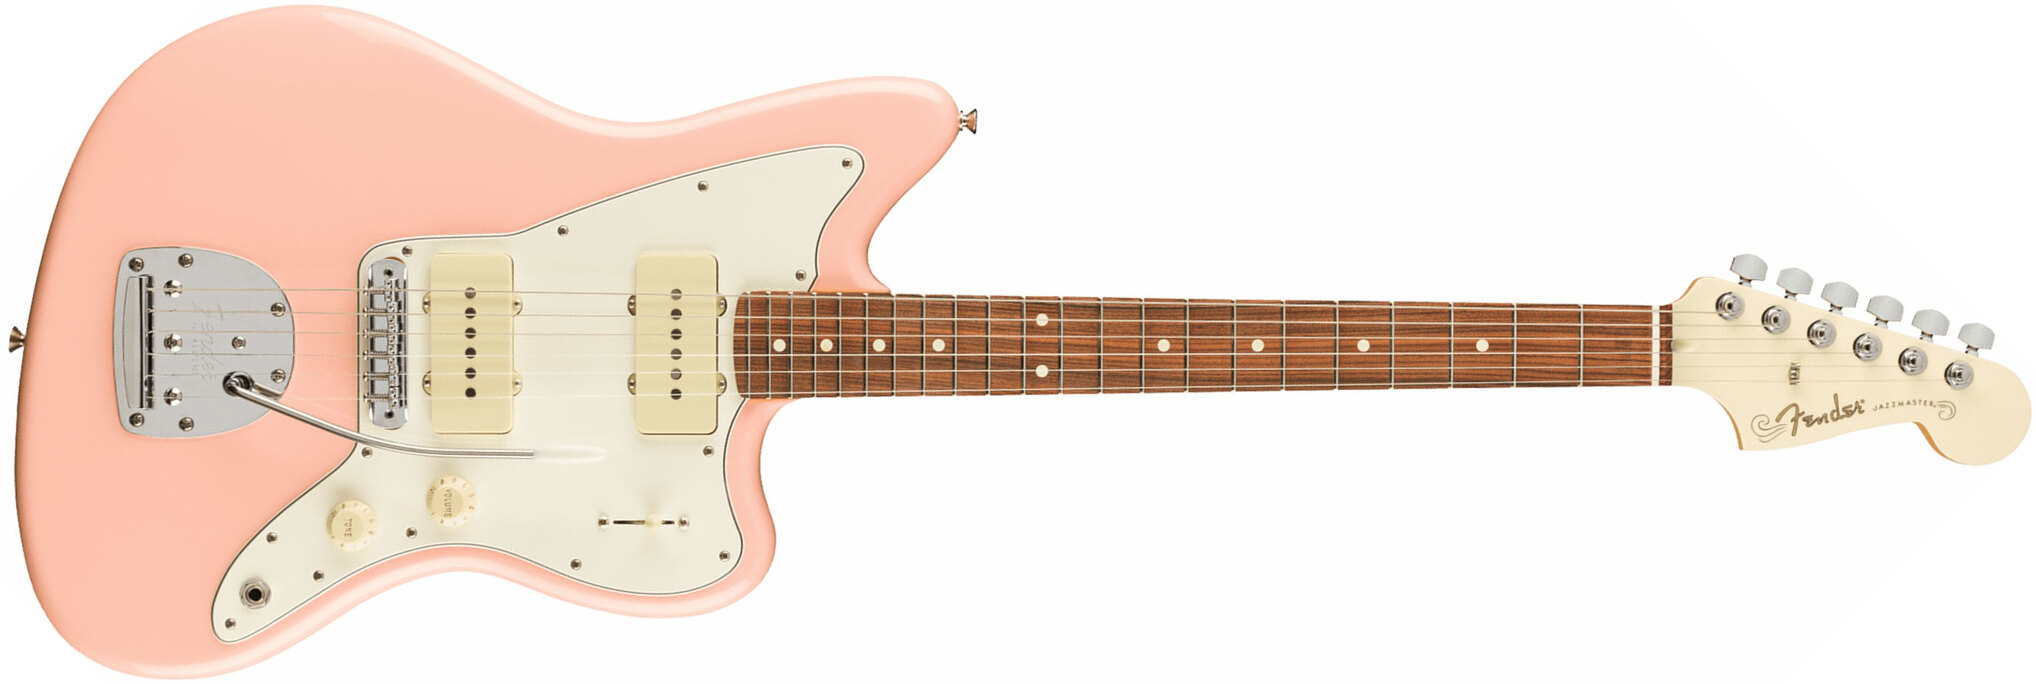 Fender Jazzmaster Player Ltd Mex 2s Trem Pf - Shell Pink - Retro-rock elektrische gitaar - Main picture